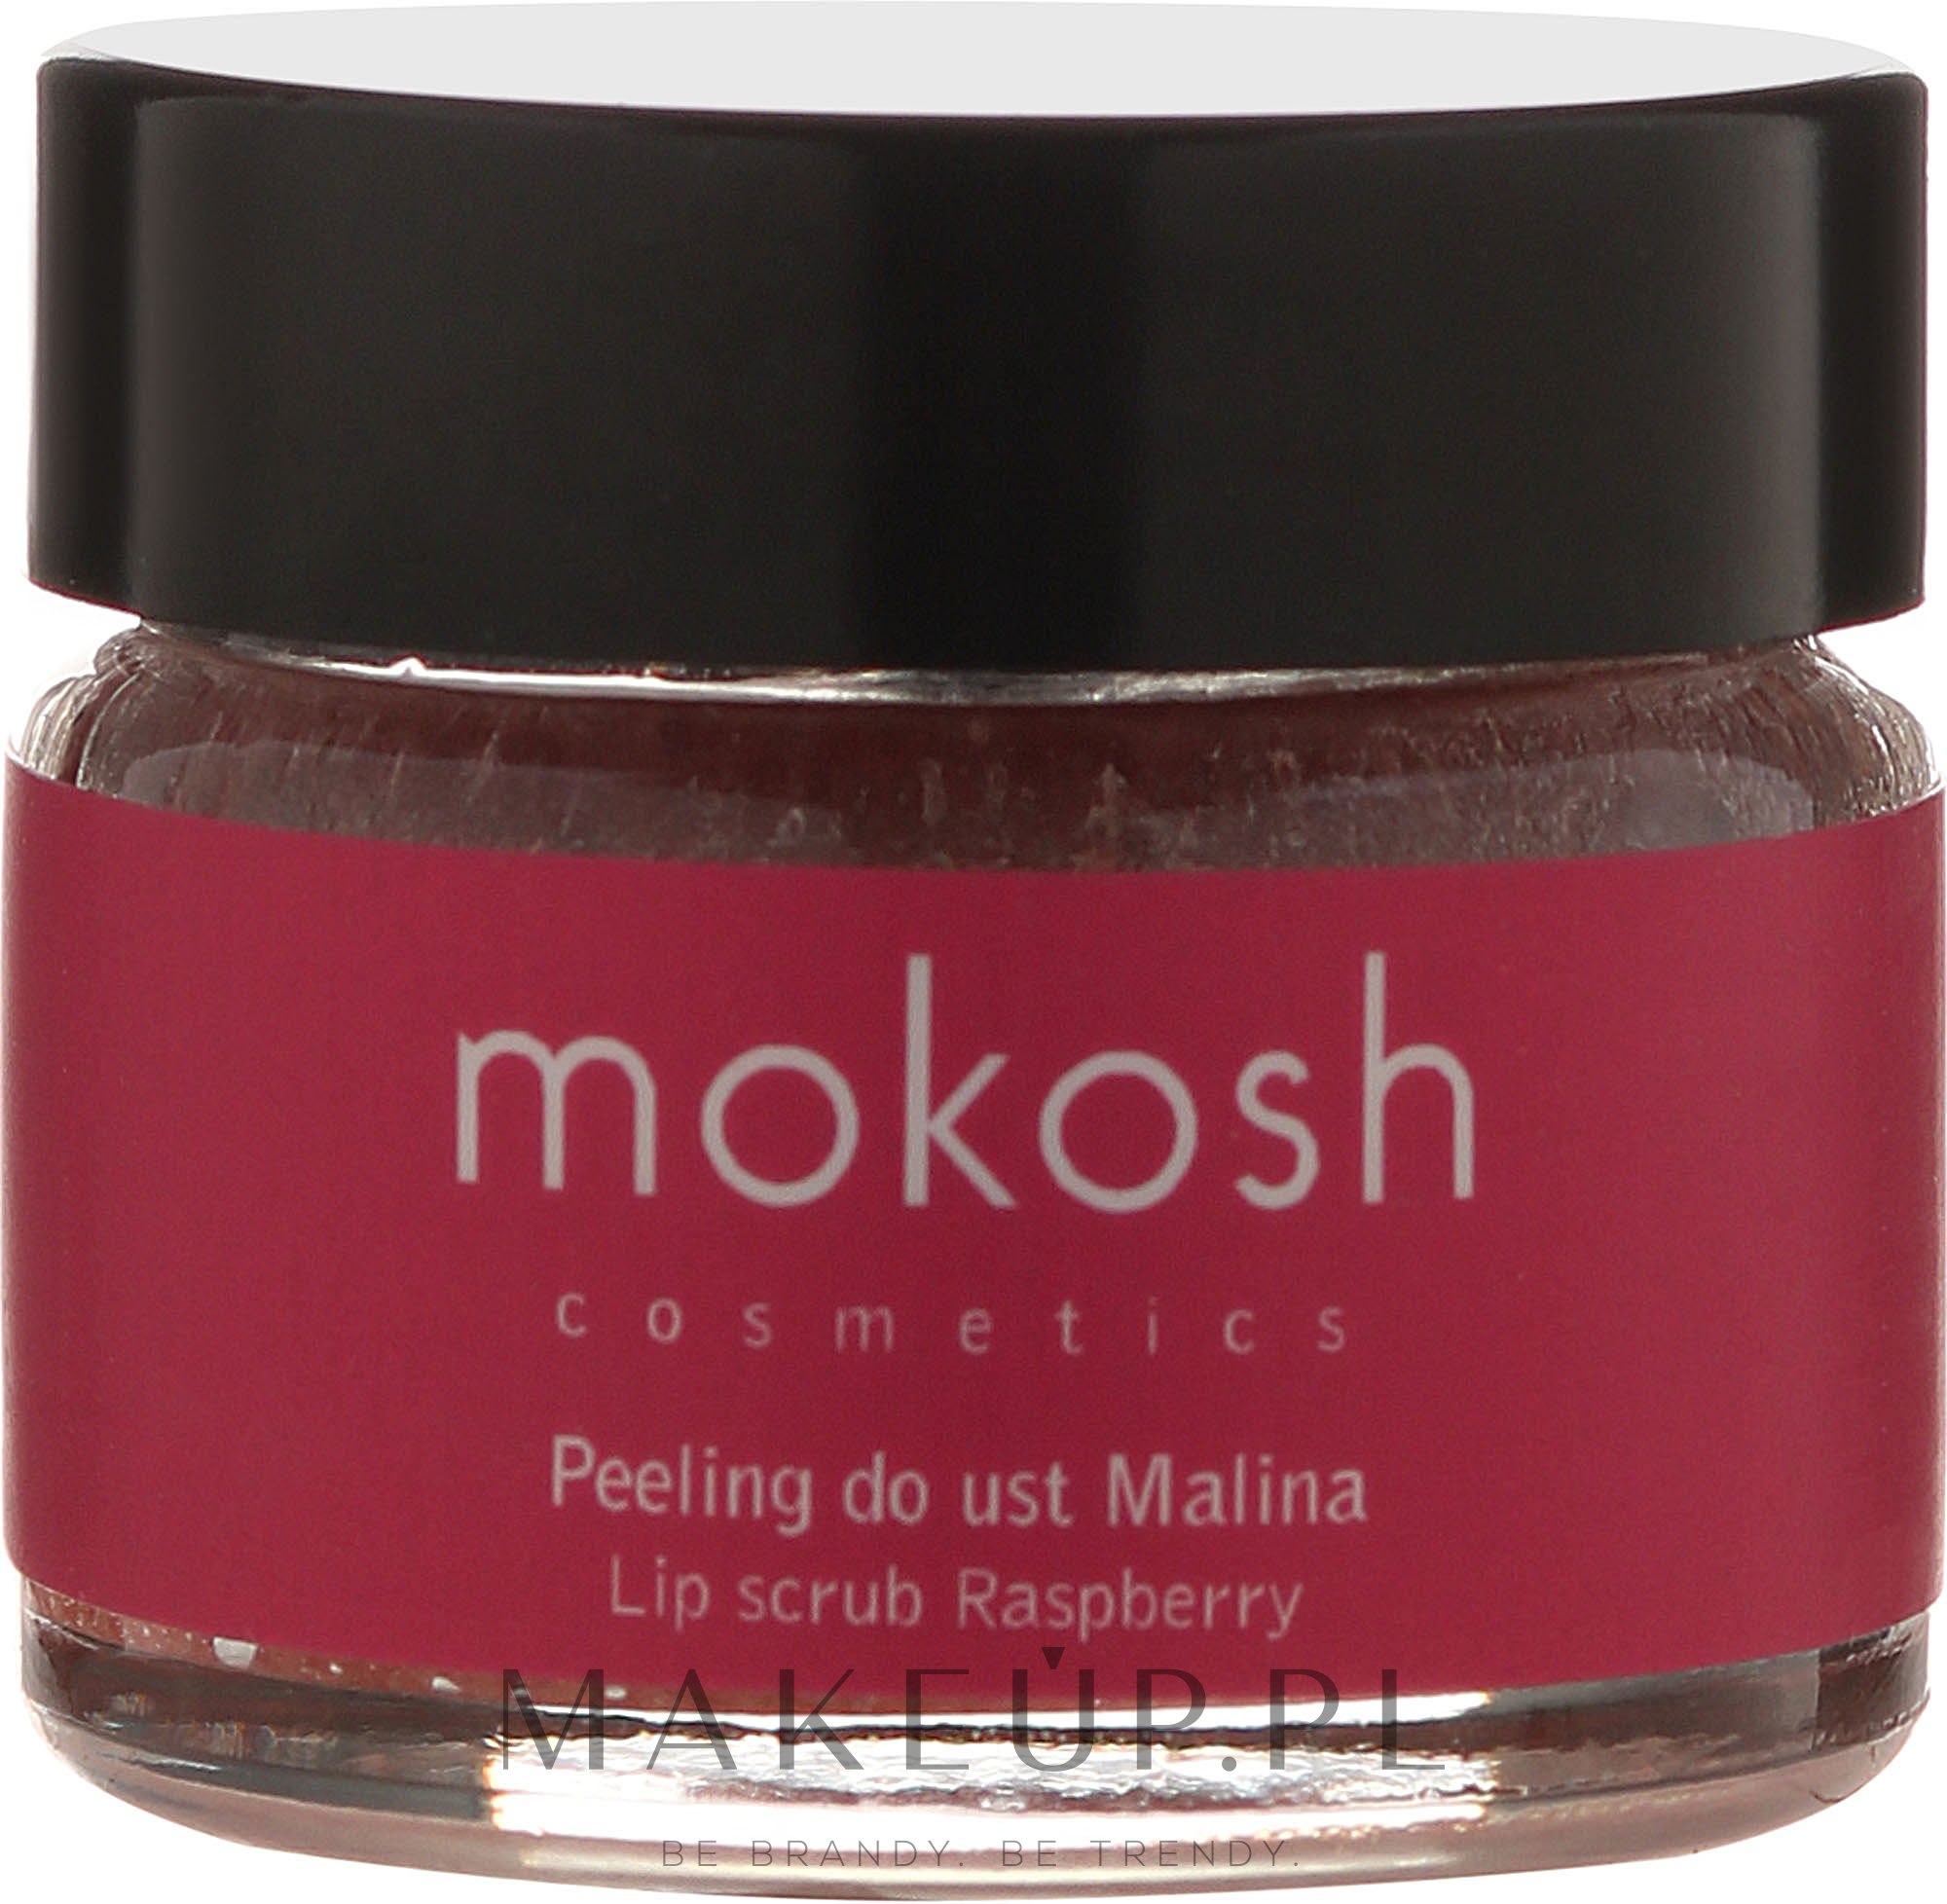 Peeling do ust Malina - Mokosh Cosmetics — Zdjęcie 15 ml